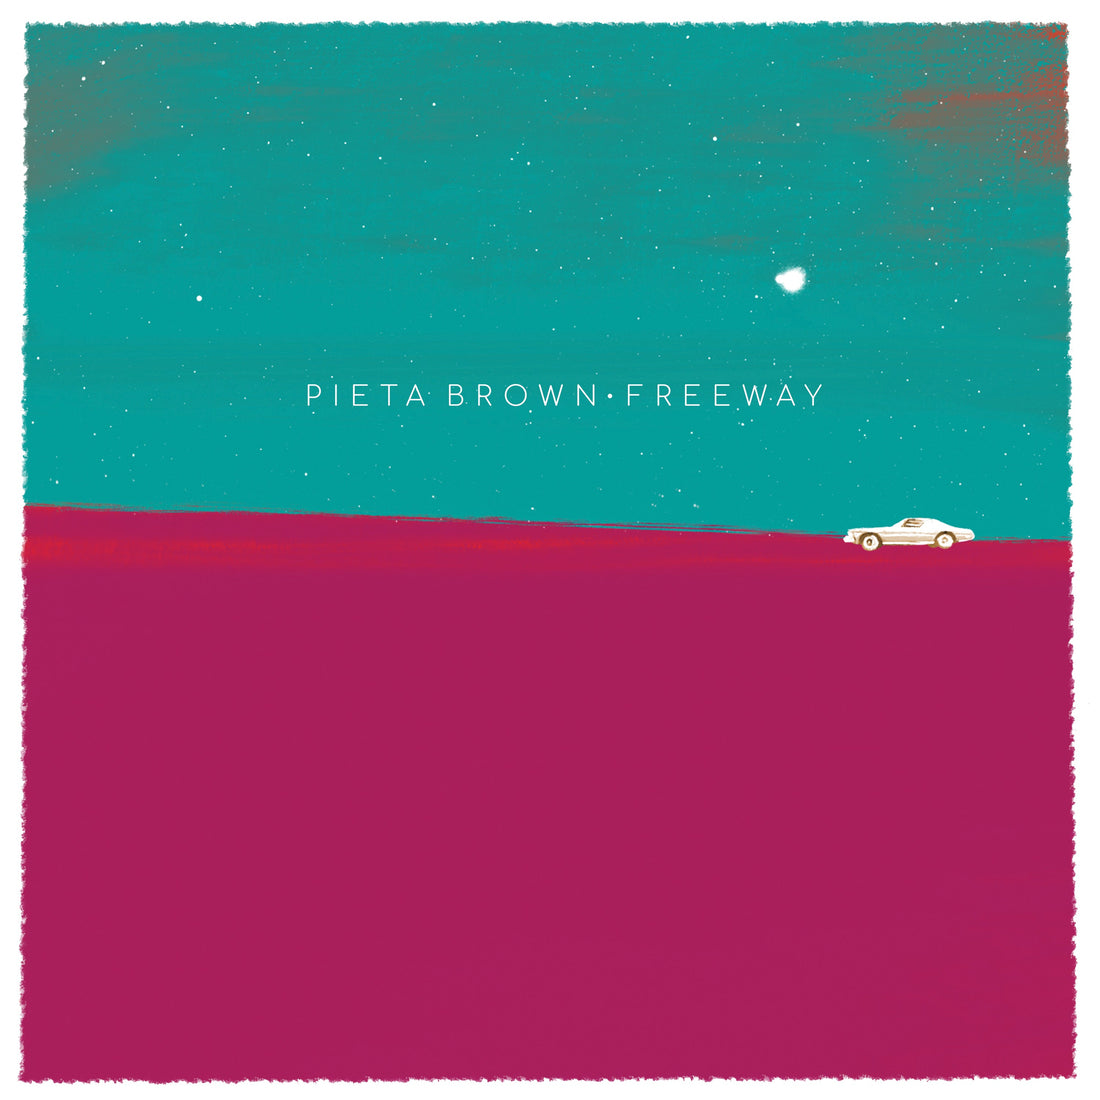 Pieta Brown's new album Freeway out now